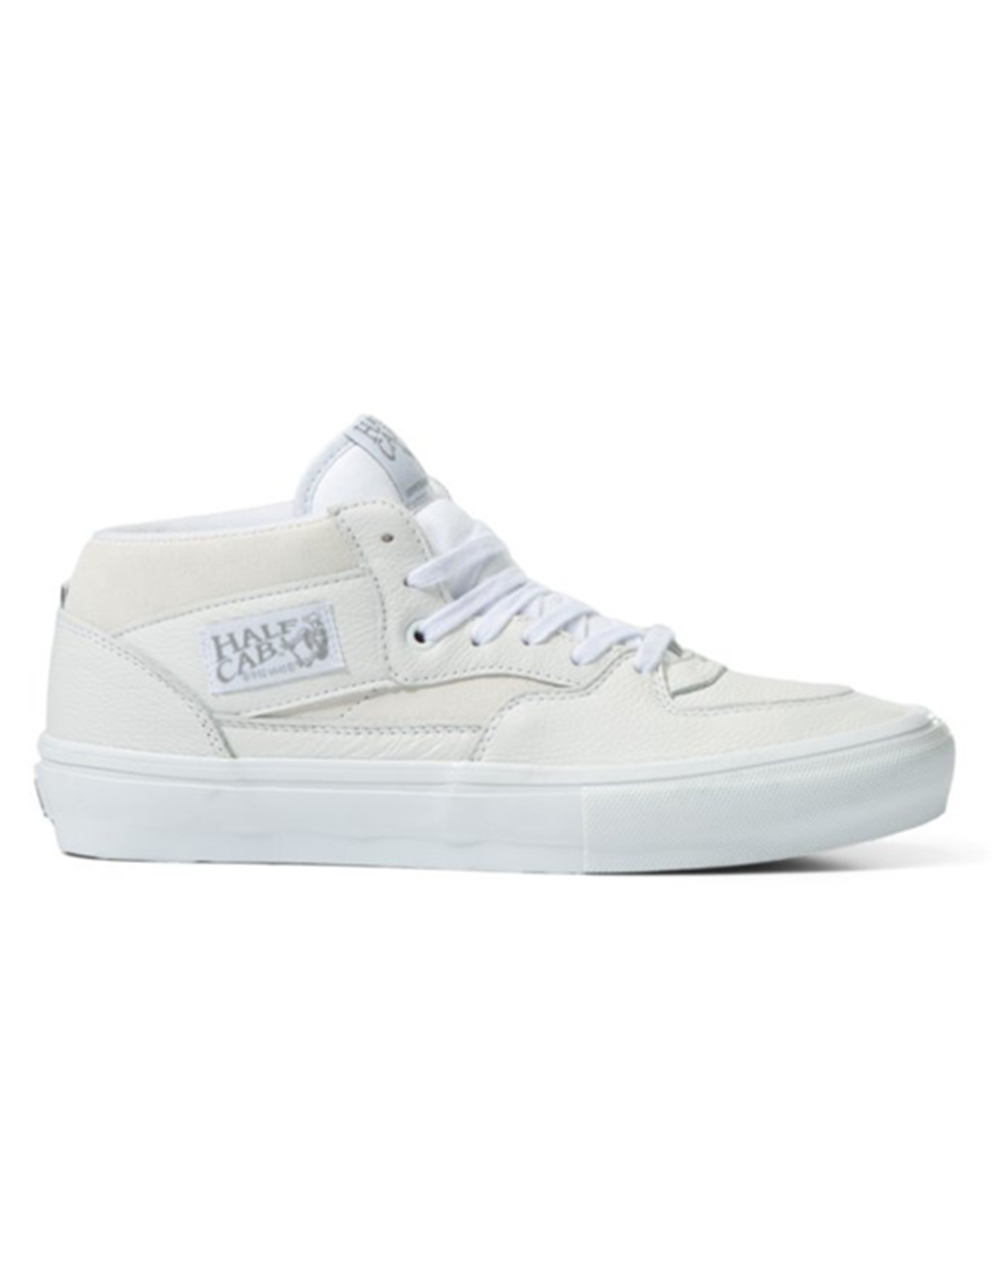 VANS Daz Skate Half Cab Shoes - OFF WHITE | Tillys